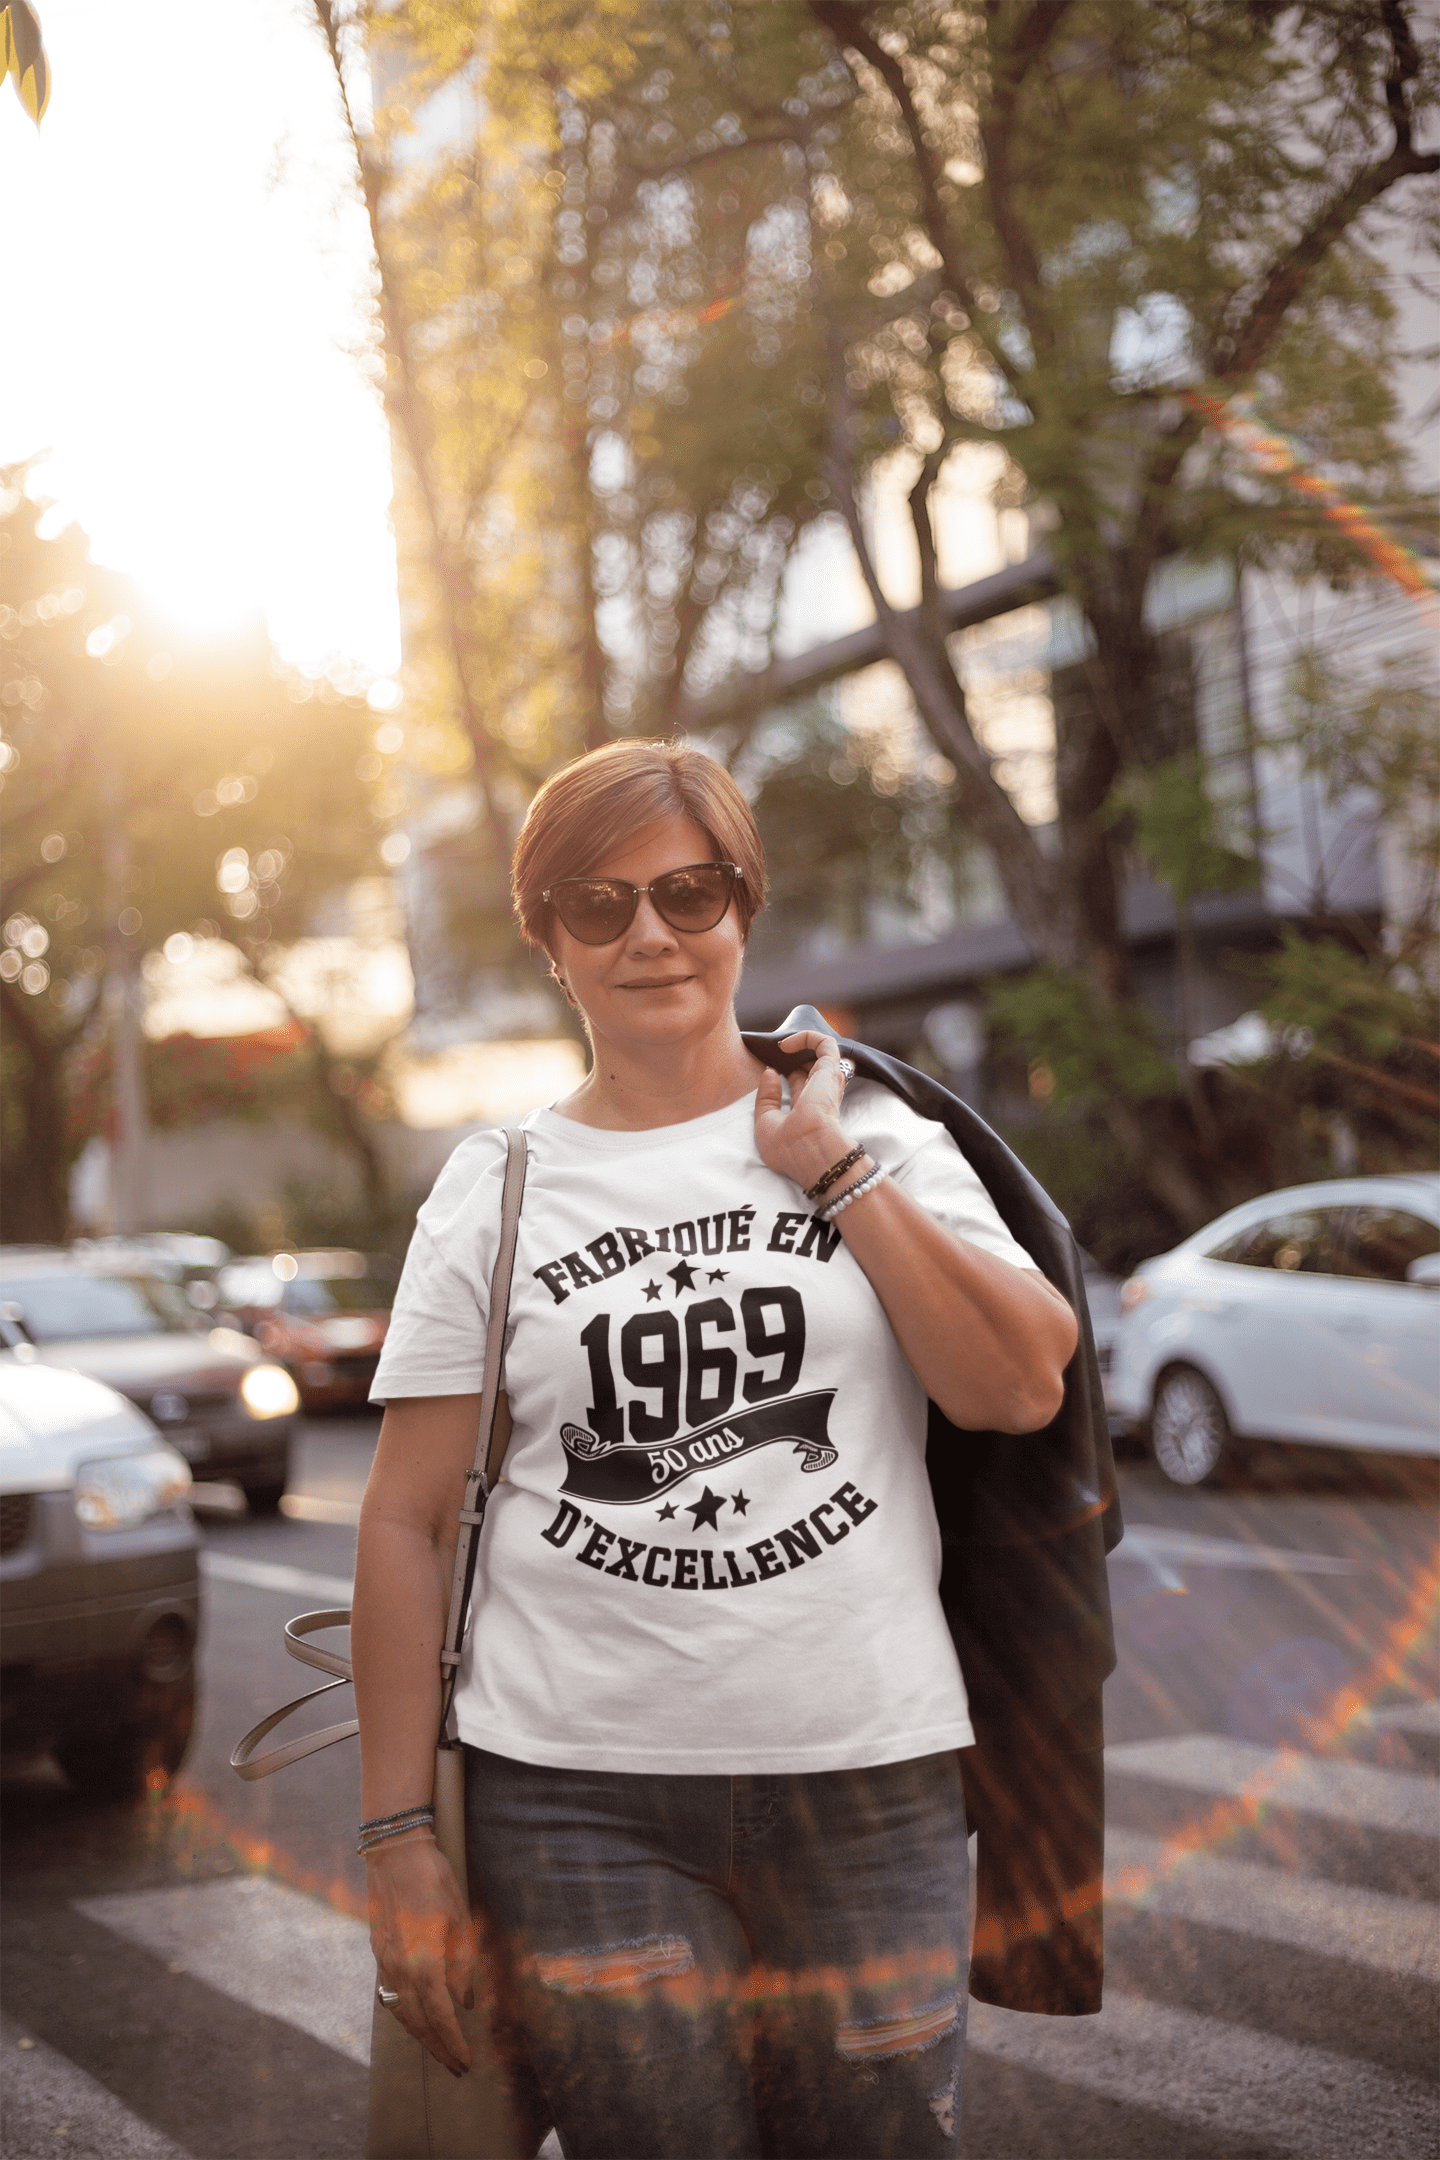 Ultrabasic - Tee-Shirt Femme col Rond Décolleté Fabriqué en 1969, 50 Ans d'être Génial T-Shirt Blanco